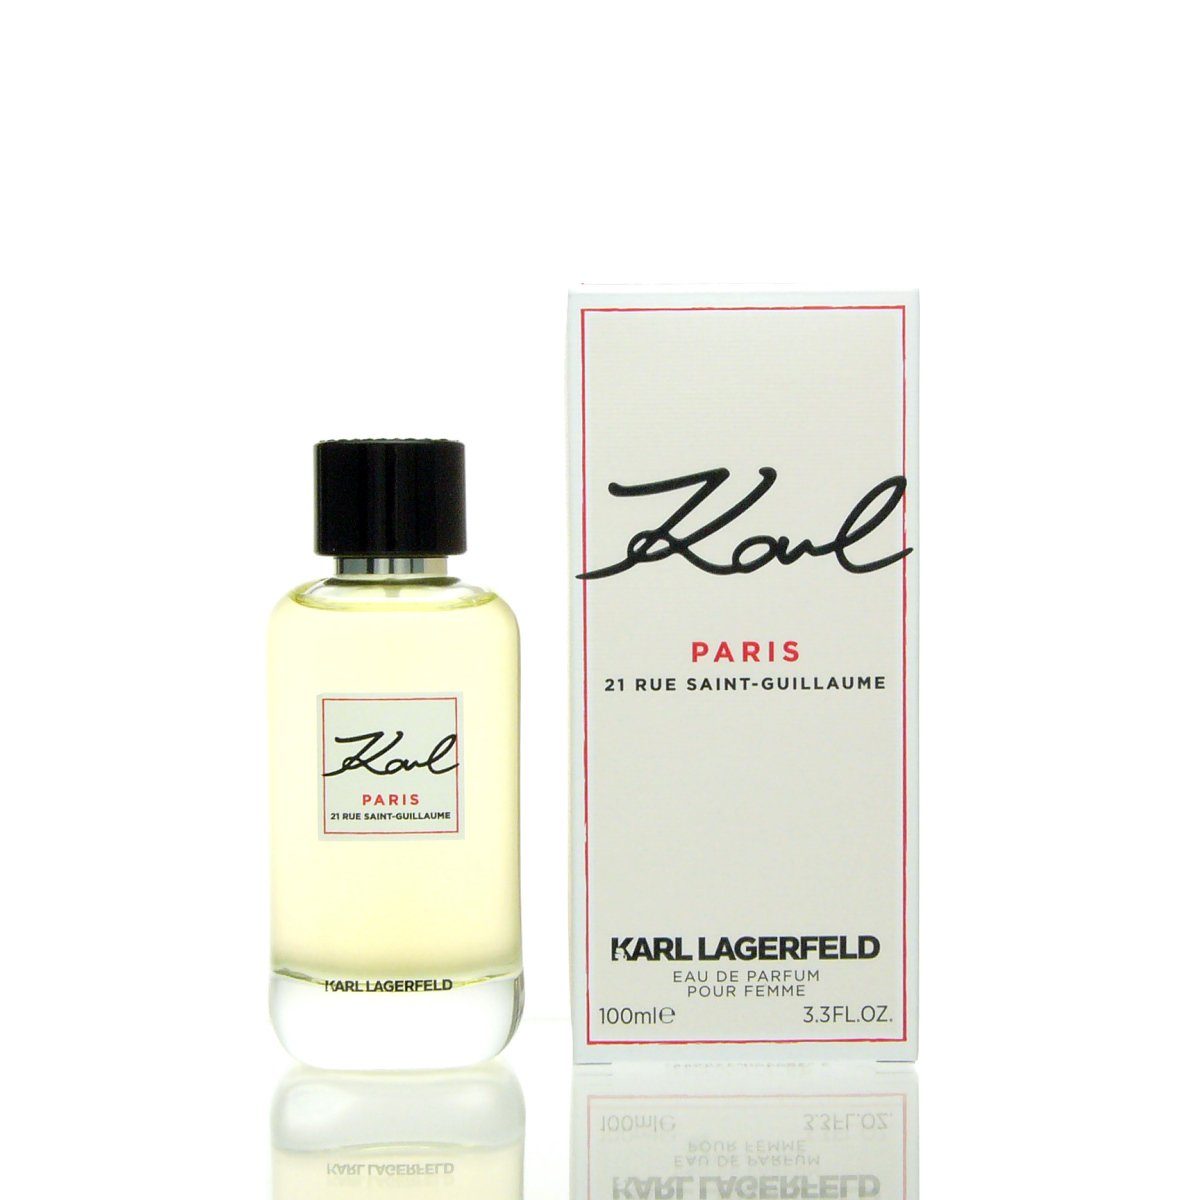 KARL LAGERFELD Eau de Parfum Parfum Eau Saint-Guillaume ml 100 Karl Karl 21 de Paris Rue Lagerfeld